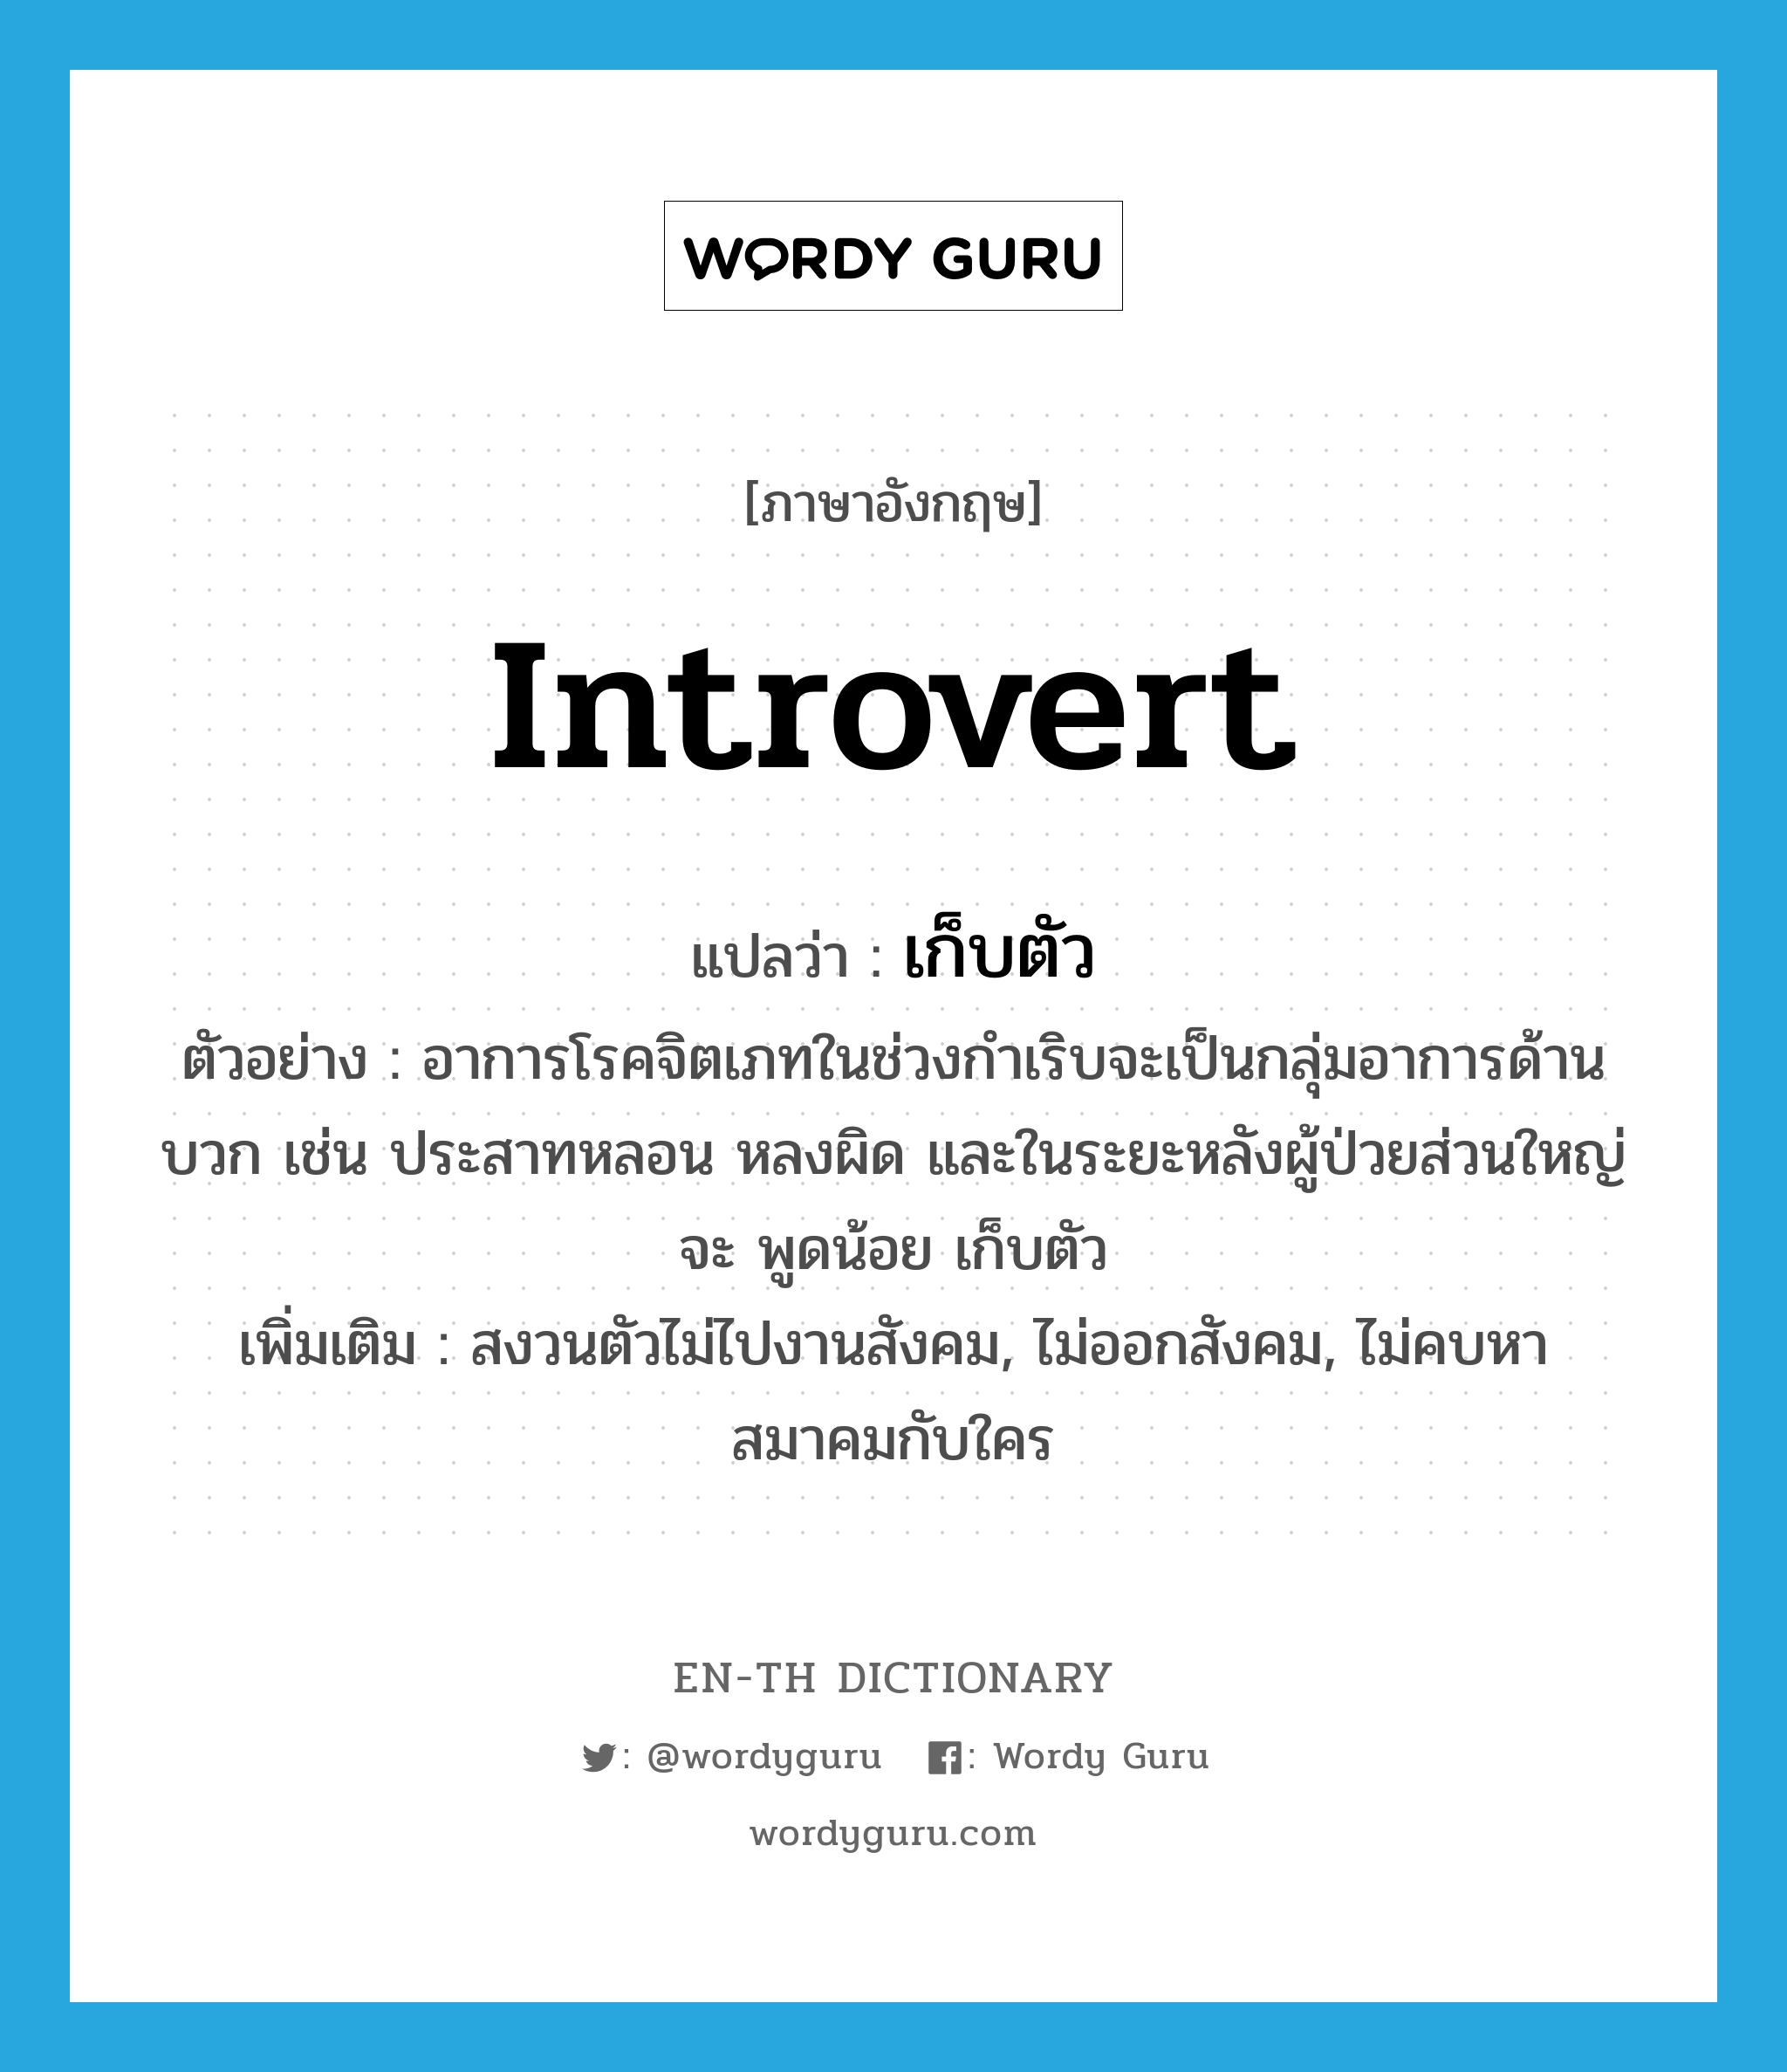 introvert แปลว่า?, คำศัพท์ภาษาอังกฤษ introvert แปลว่า เก็บตัว ประเภท V ตัวอย่าง อาการโรคจิตเภทในช่วงกำเริบจะเป็นกลุ่มอาการด้านบวก เช่น ประสาทหลอน หลงผิด และในระยะหลังผู้ป่วยส่วนใหญ่จะ พูดน้อย เก็บตัว เพิ่มเติม สงวนตัวไม่ไปงานสังคม, ไม่ออกสังคม, ไม่คบหาสมาคมกับใคร หมวด V